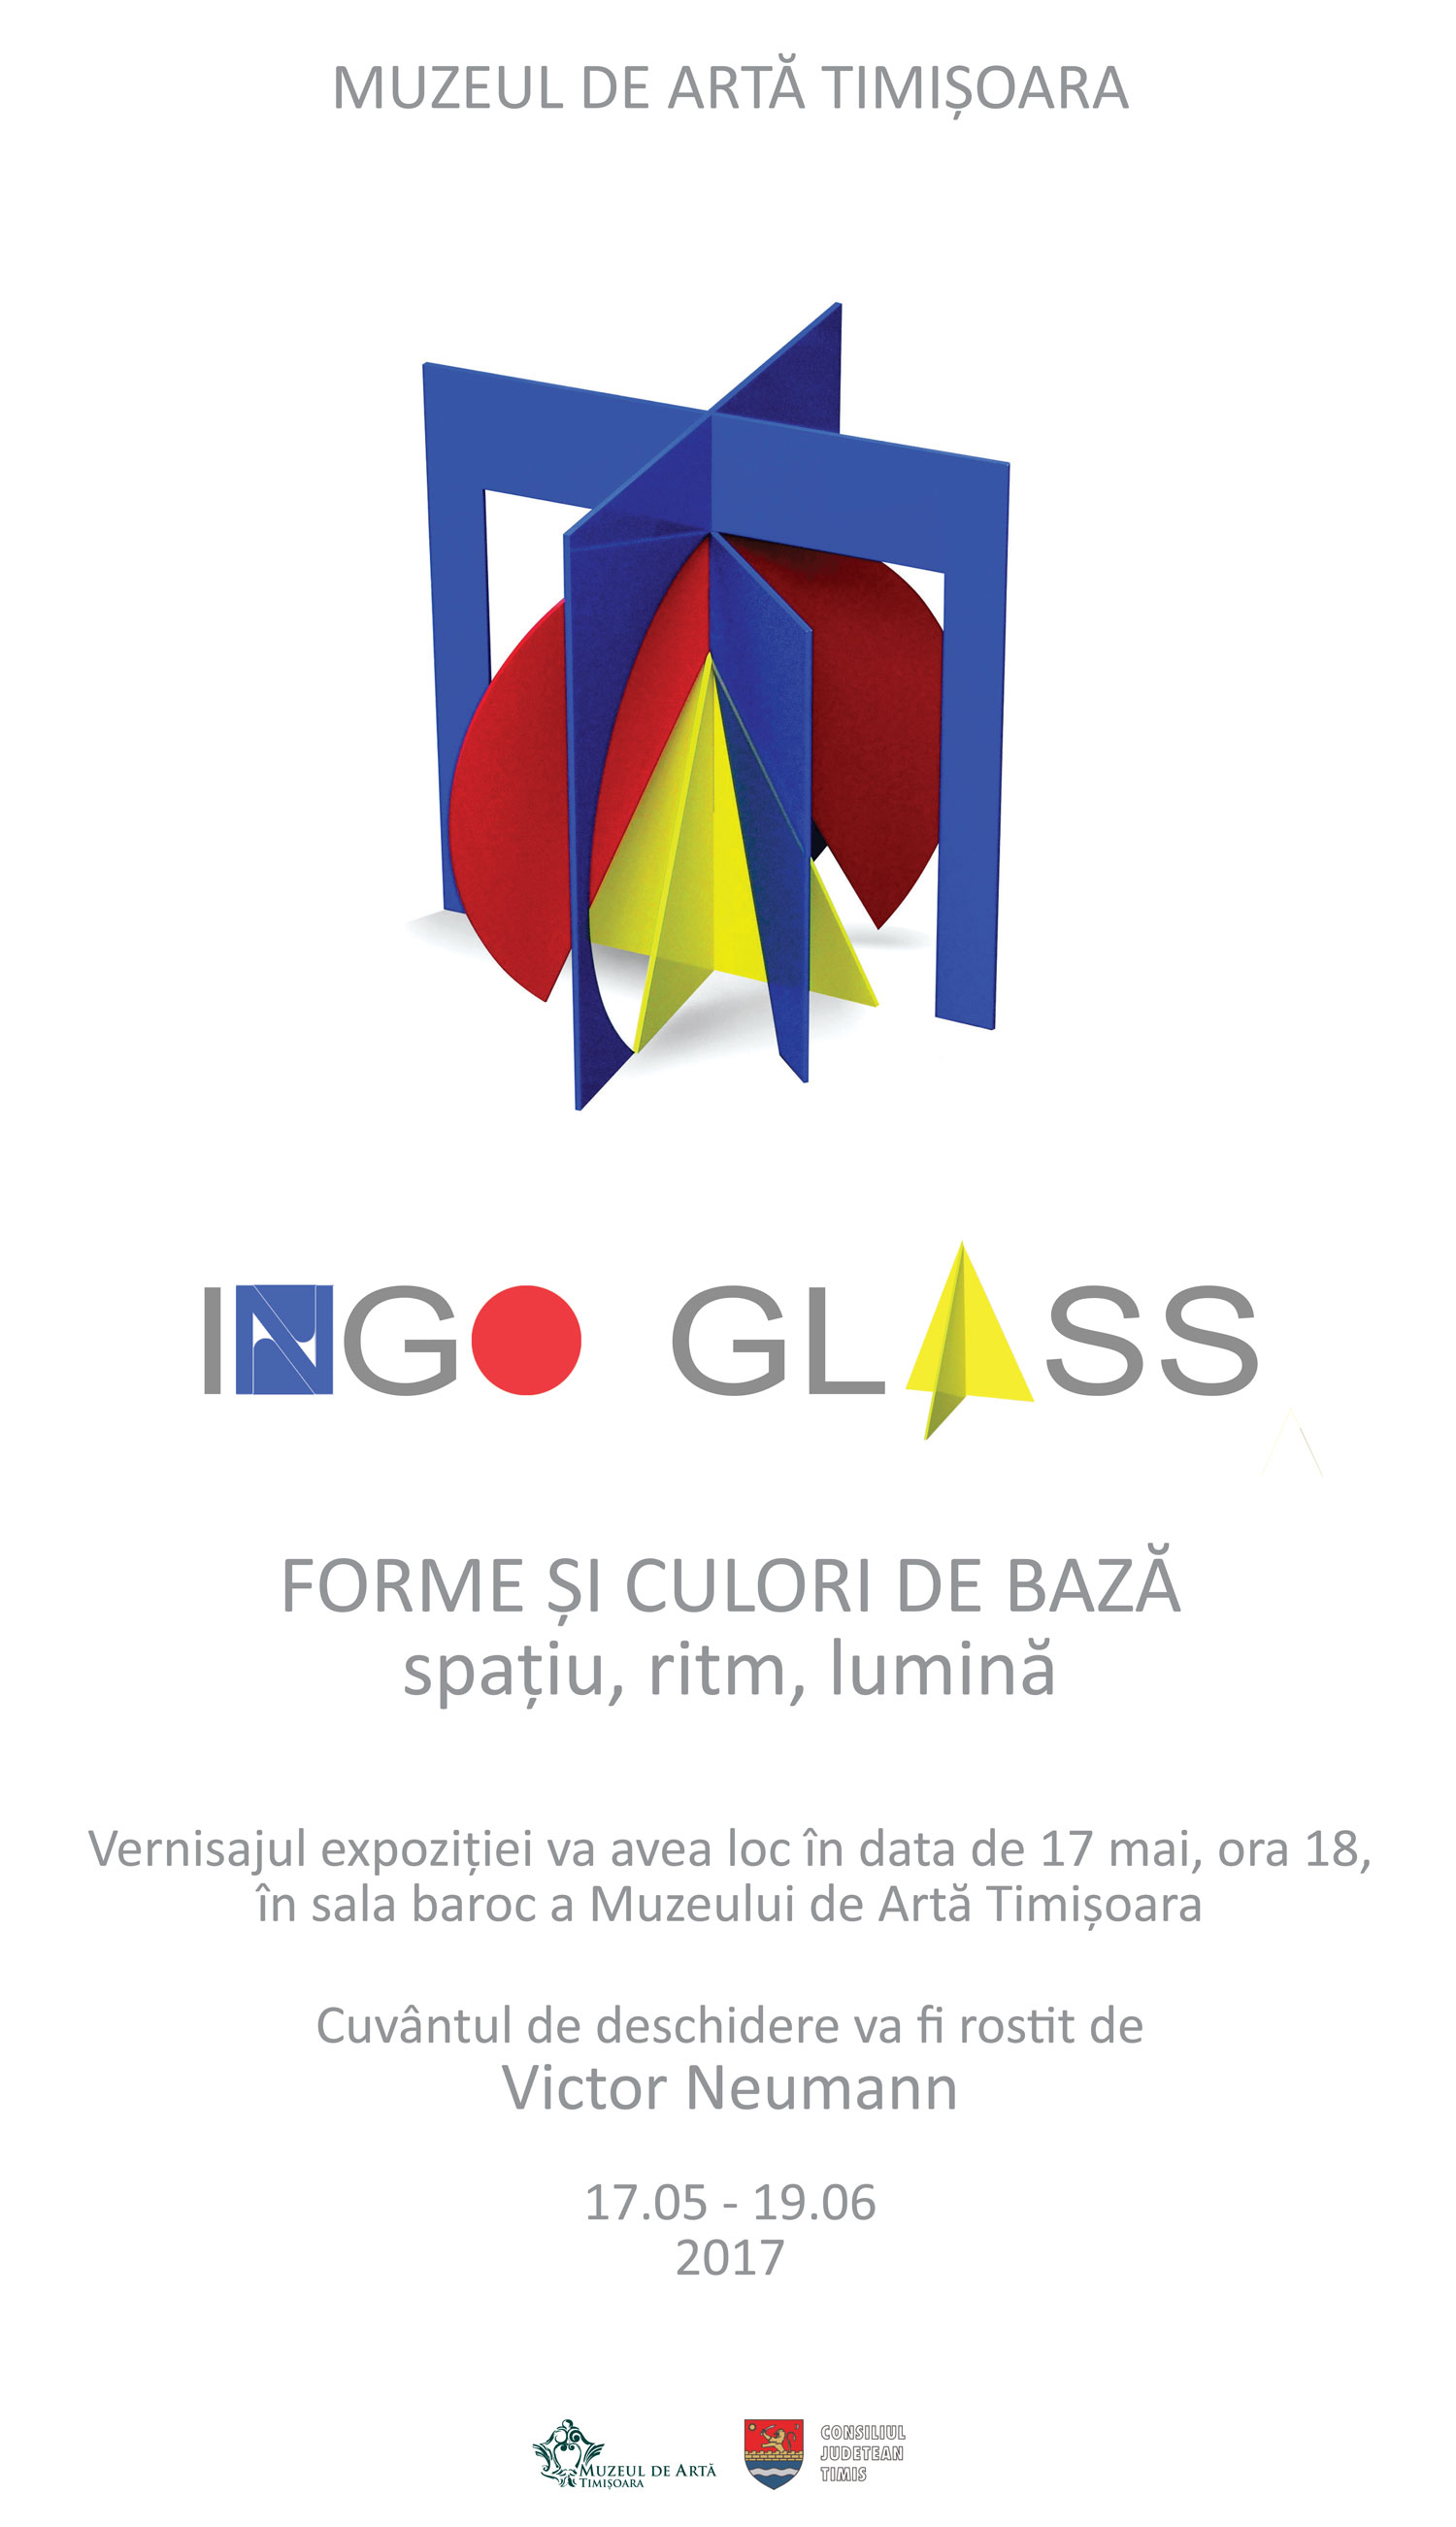 Expoziție Ingo Glass @ Muzeul de Artă Timișoara